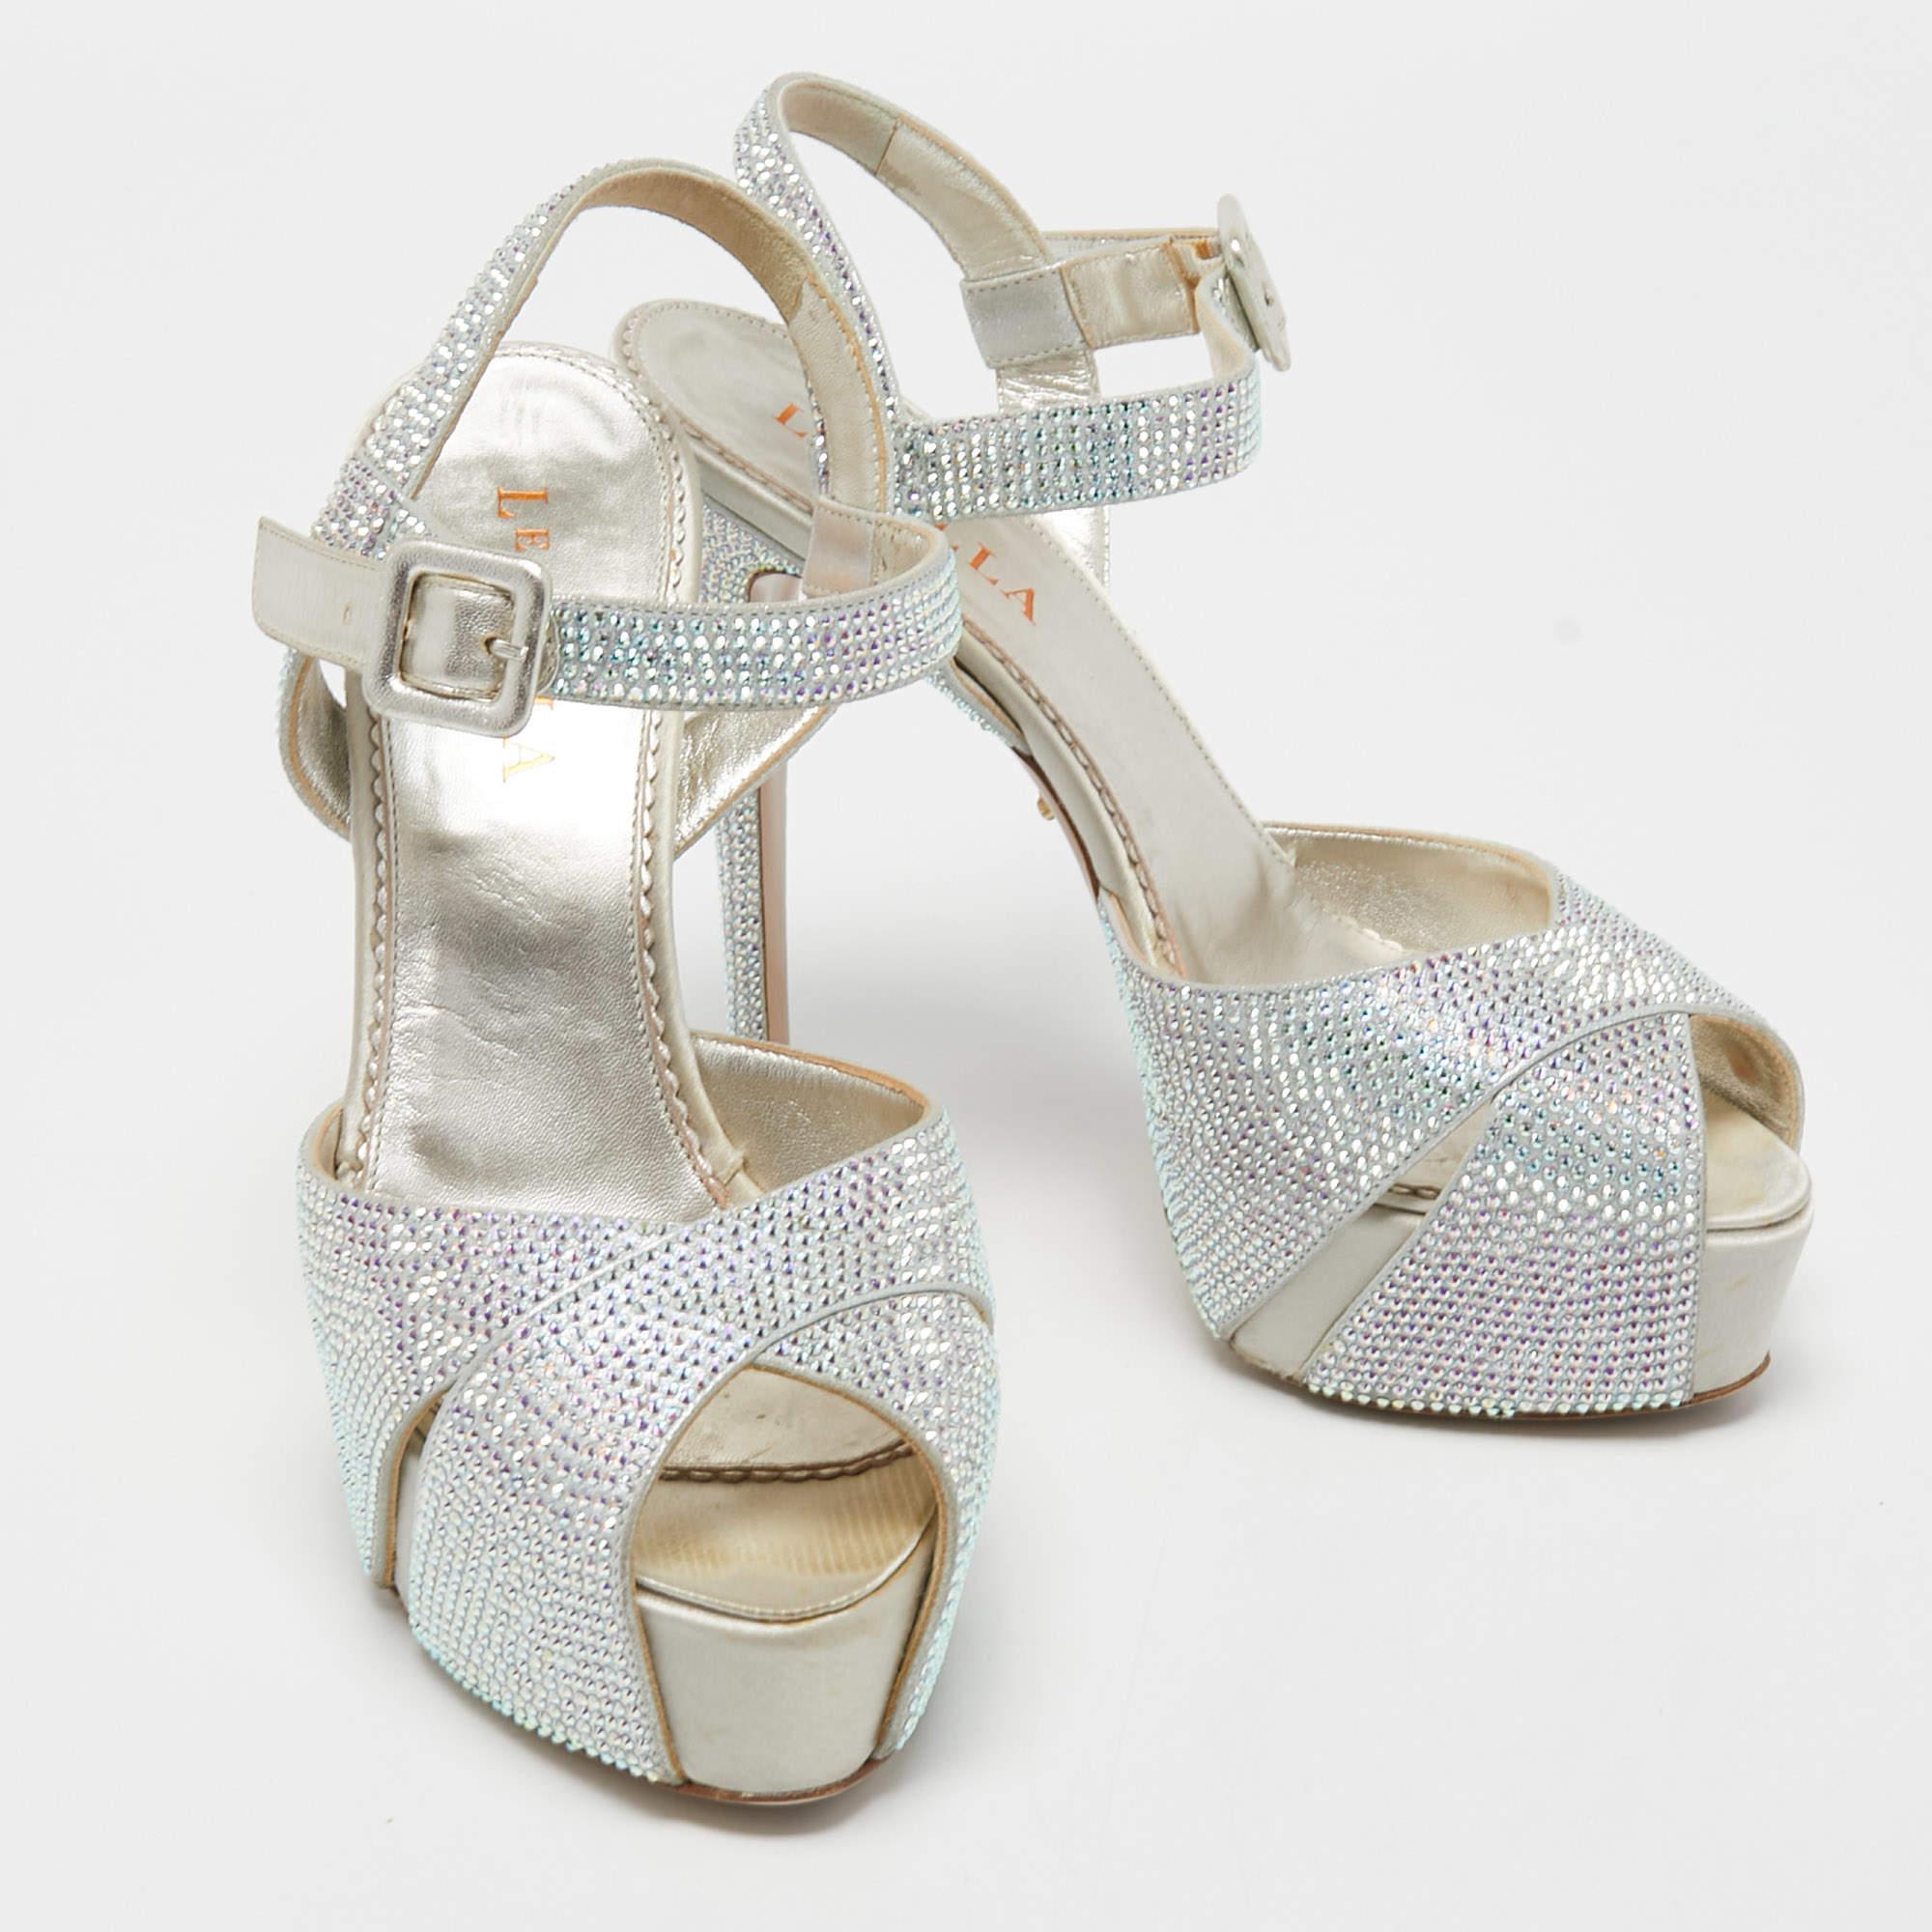 Le Silla Silver Crystal Embellished Cross Ankle Strap Platform Sandals Size 37 For Sale 1